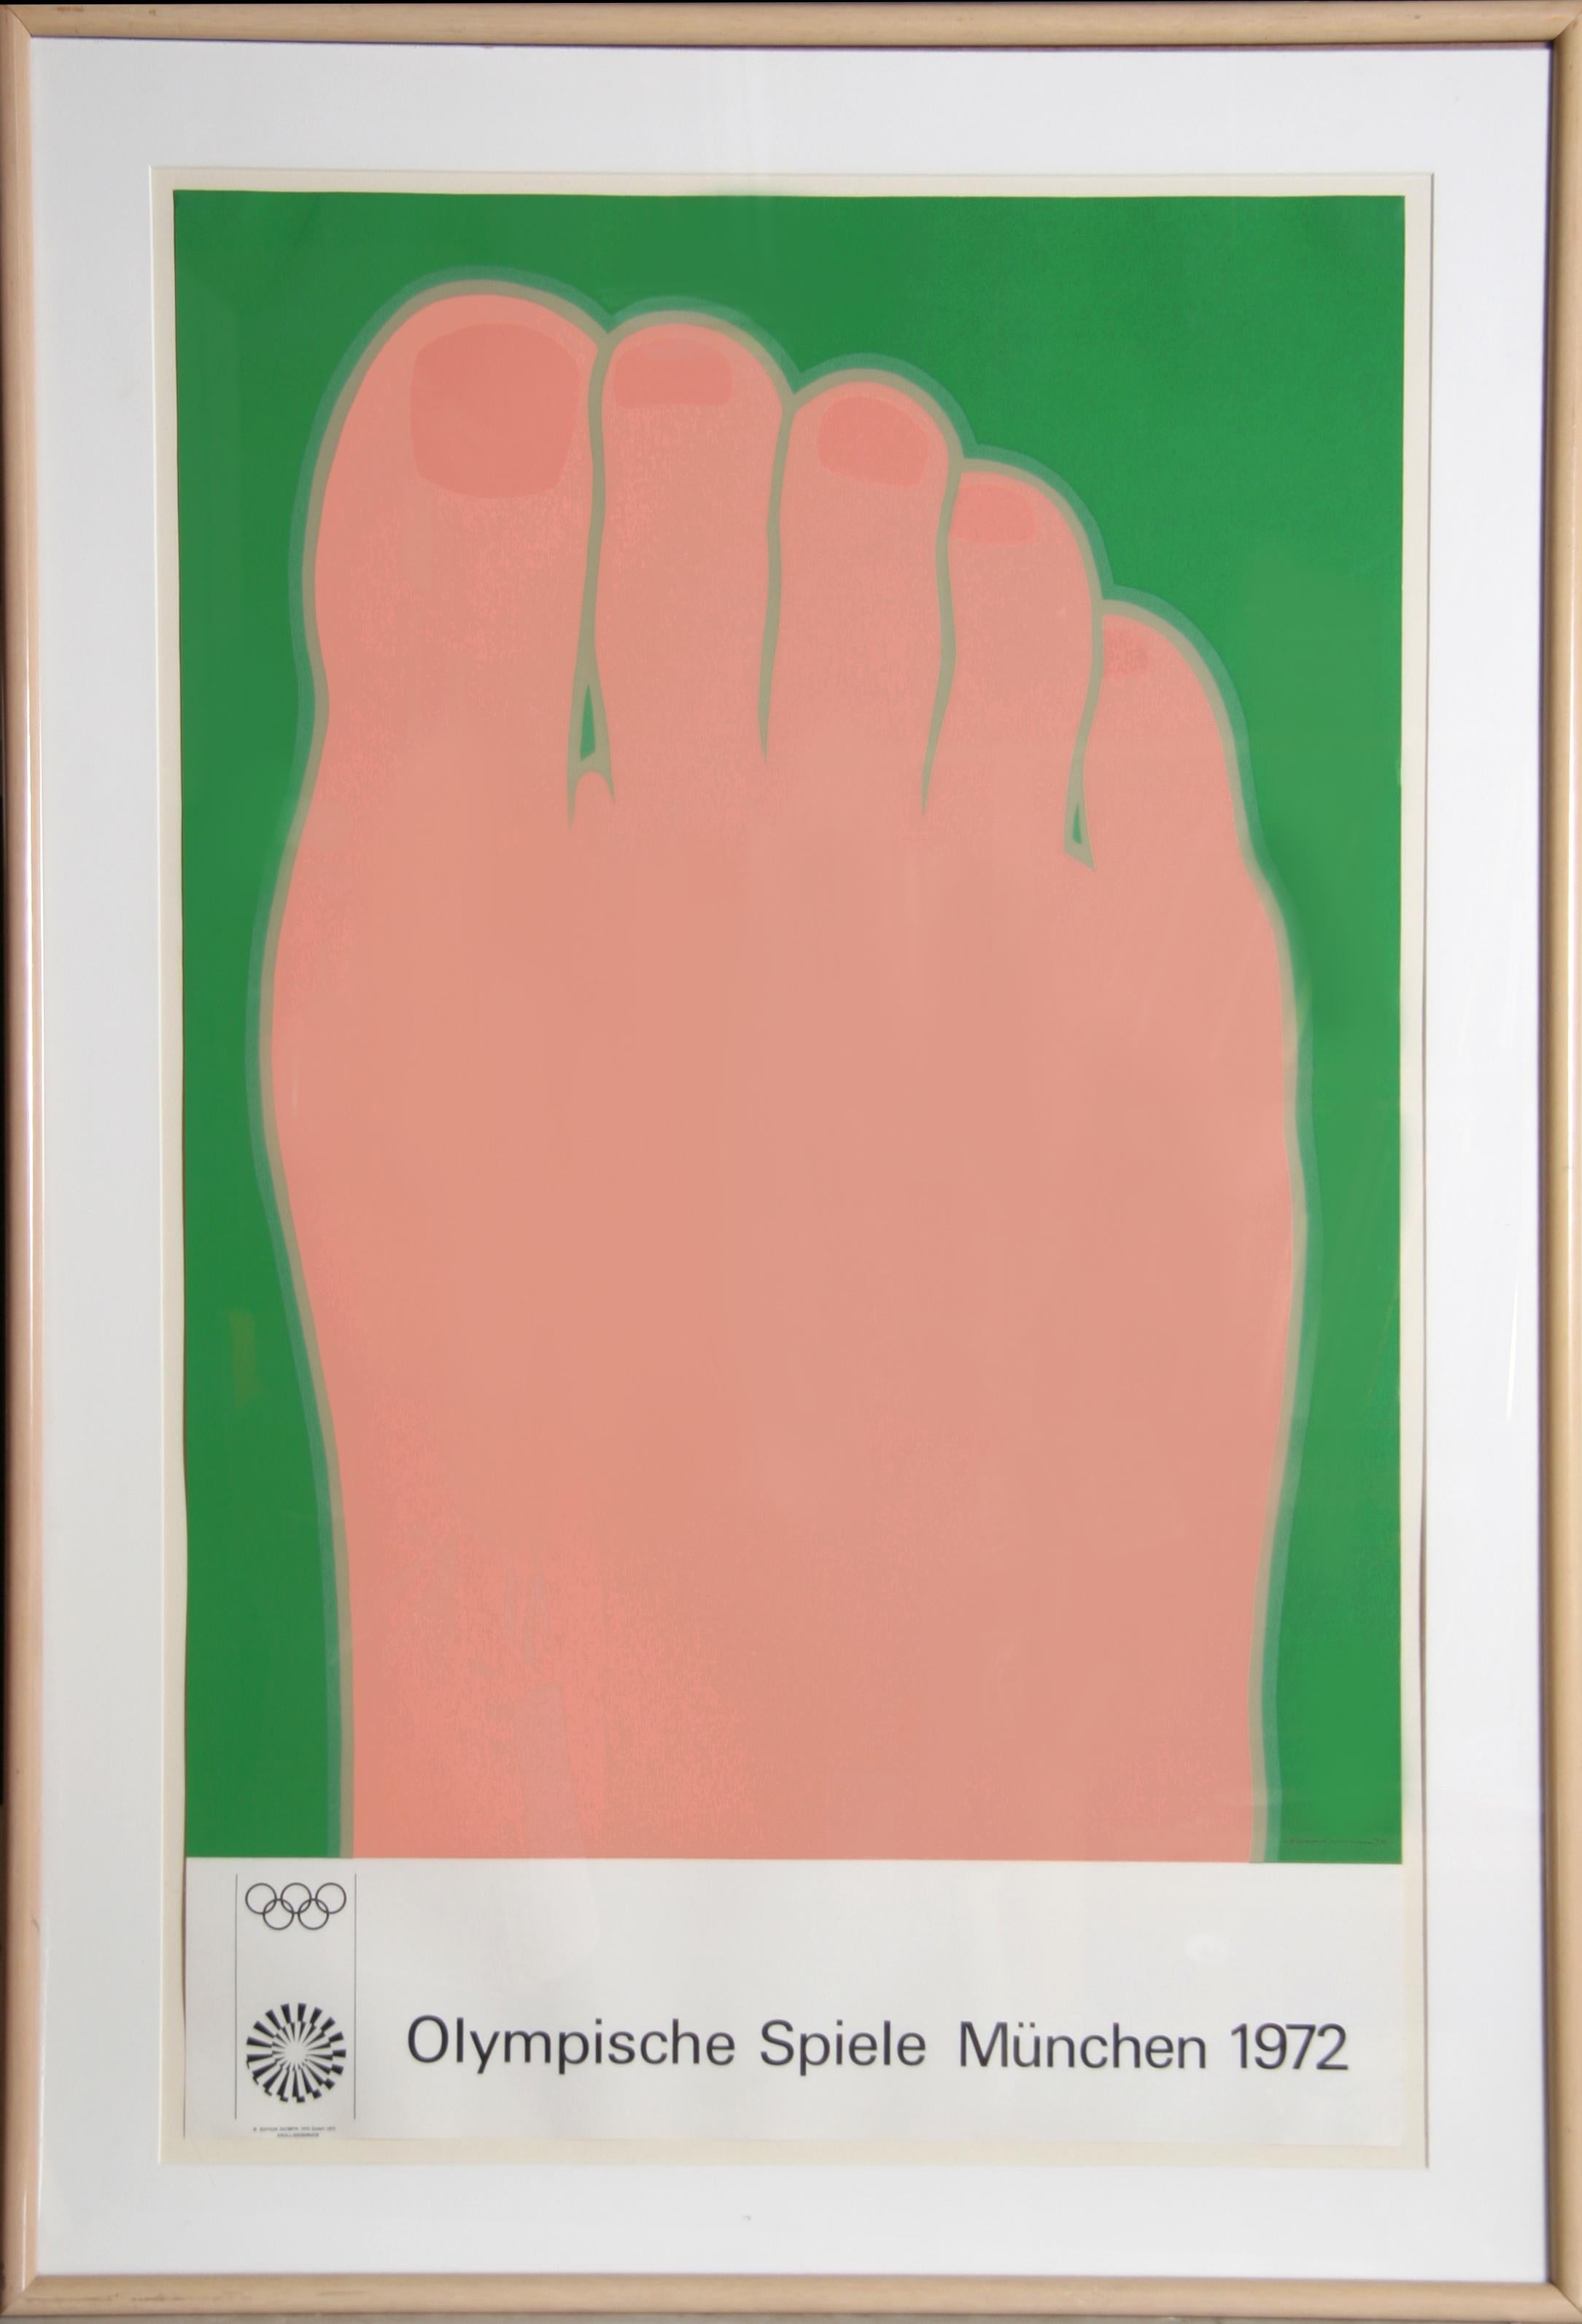 Olympische Spiele Muenchen (Fuß) von Tom Wesselmann